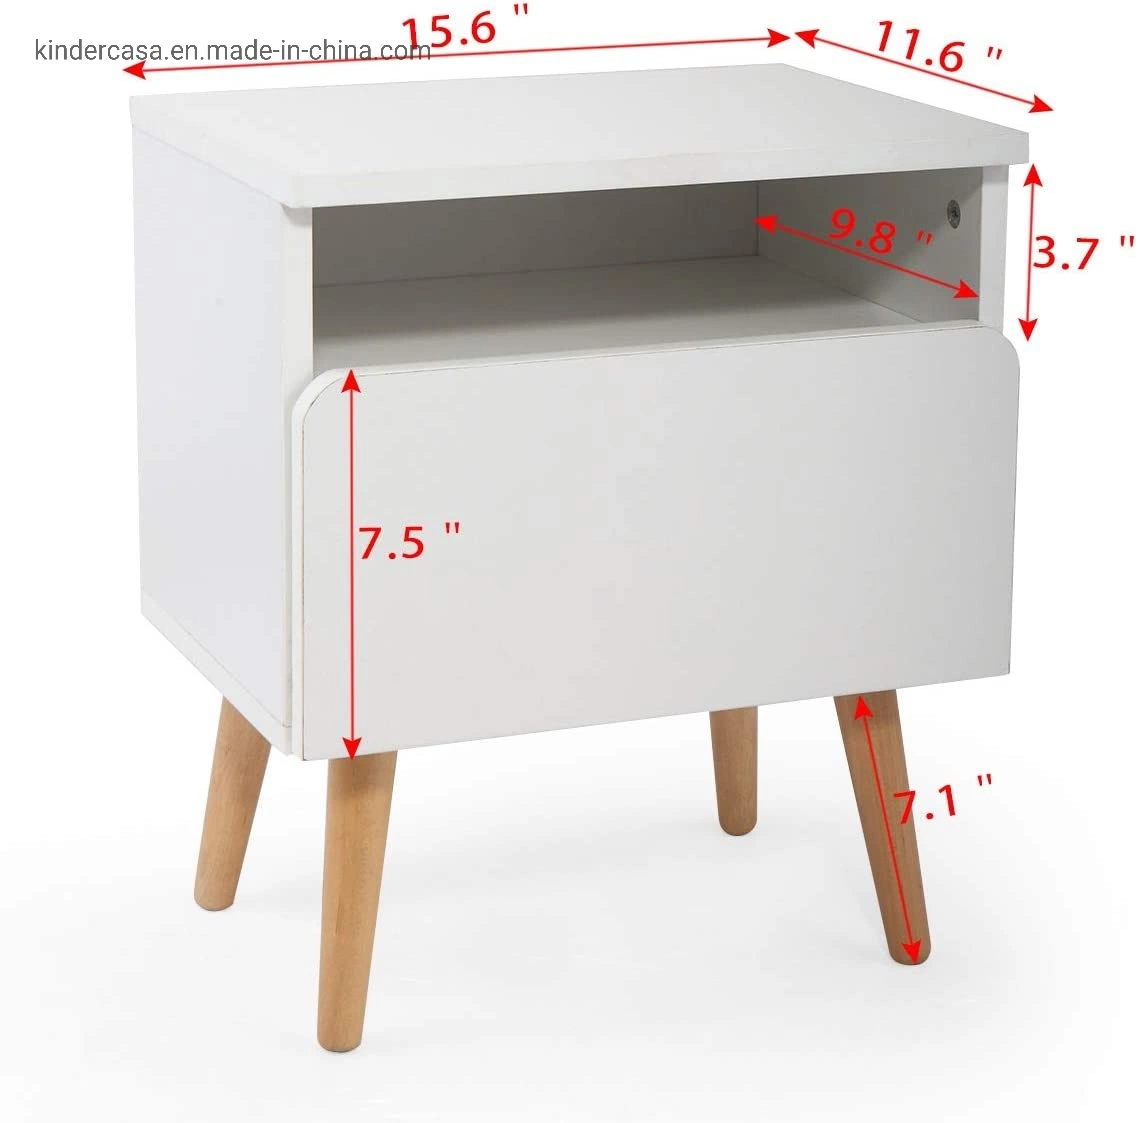 Massivholz Beistelltisch, moderne stilvolle Nachttisch Organizer Home Möbel Wohnzimmer Schlafzimmer mit Schublade Ablage Regal, Weiß